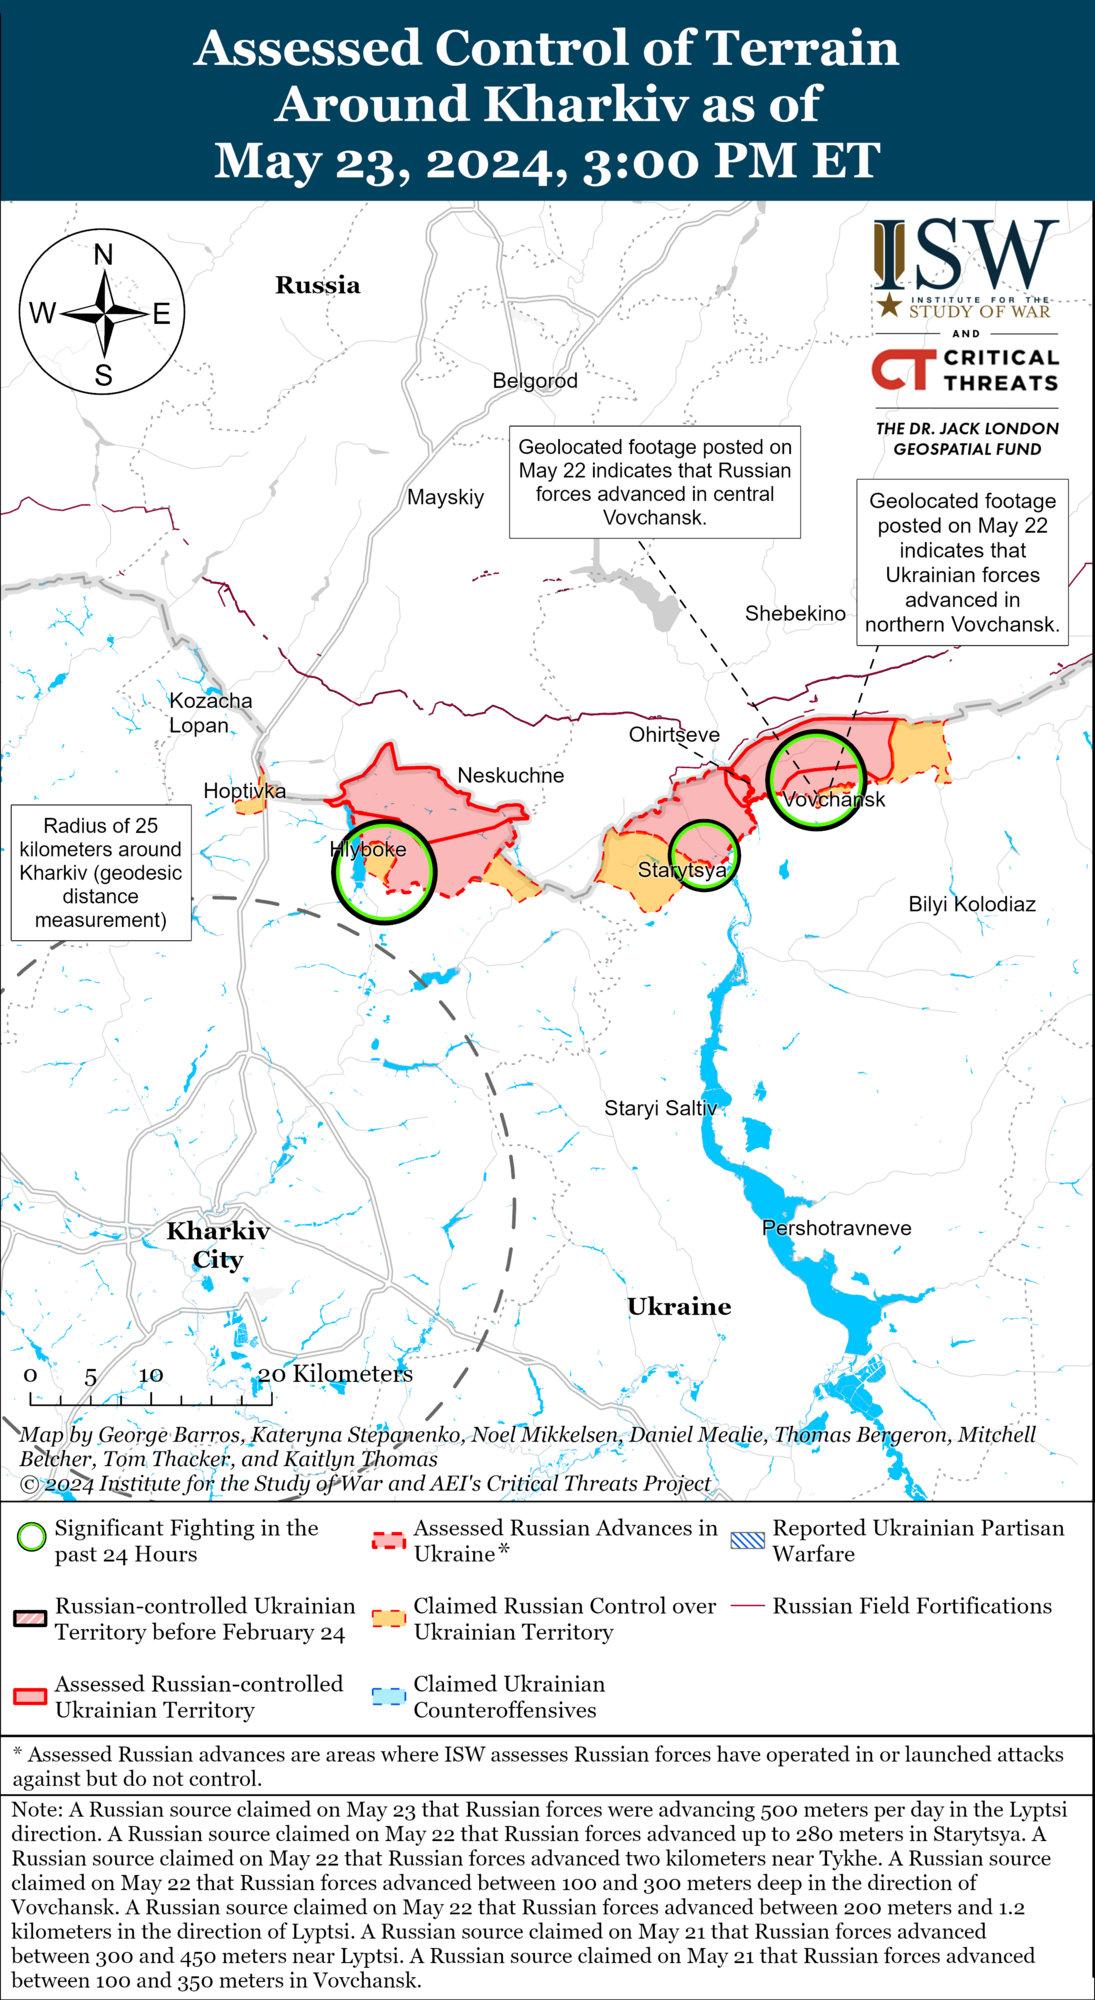 У Сил оборони є успіхи на Харківщині, але окупанти не припиняють атак: в ISW оцінили ситуацію. Карта
